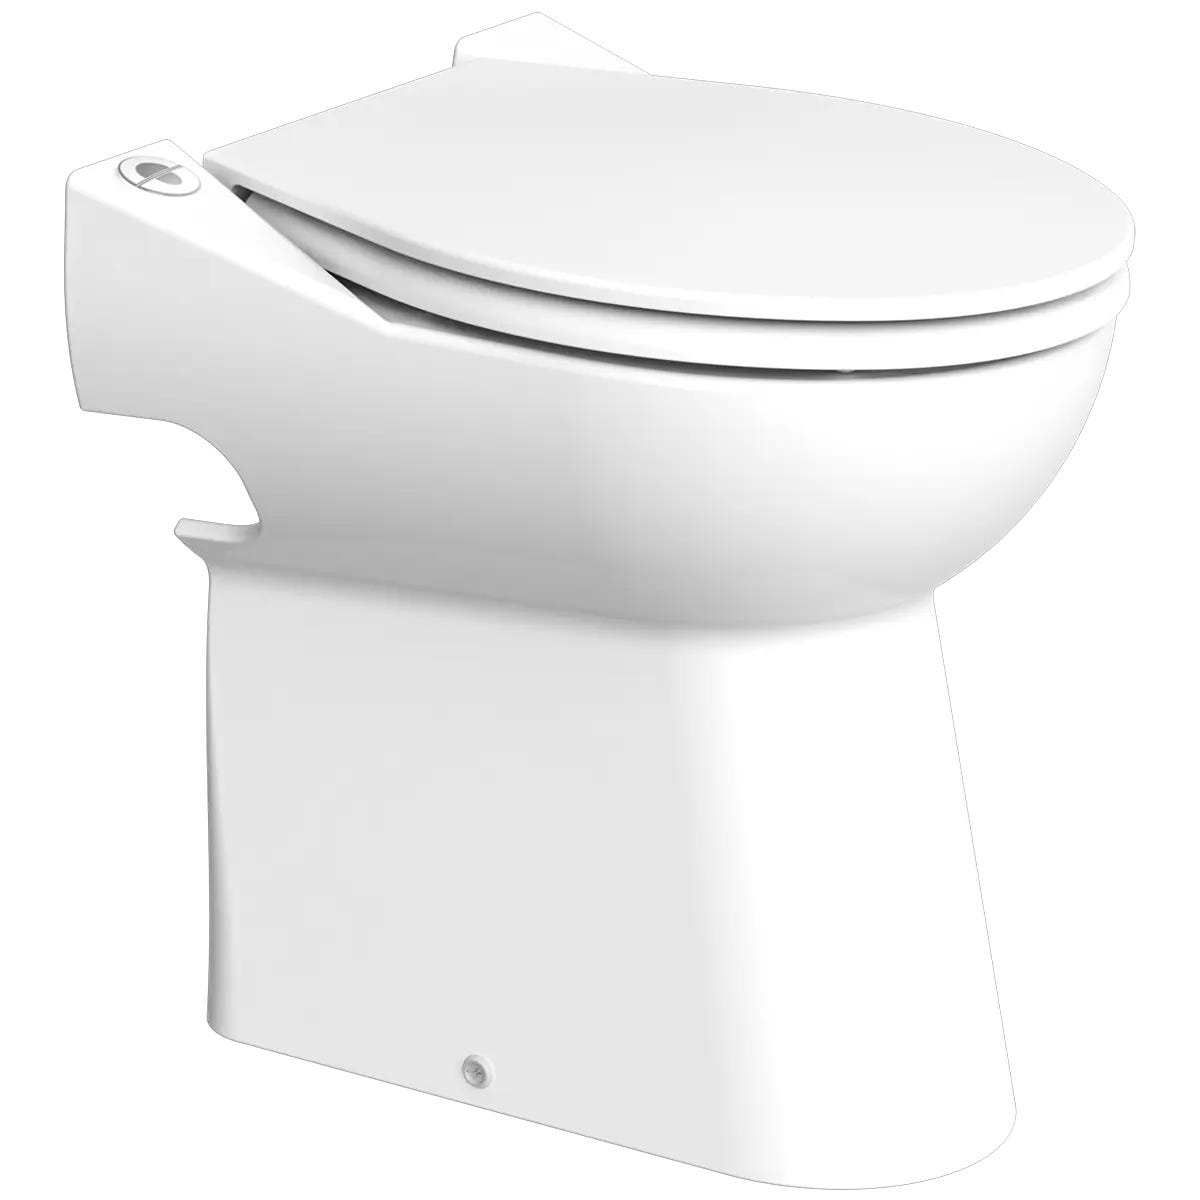 Broyeur Pro pour WC, lavabo, bidet et bidet de la marque SFA